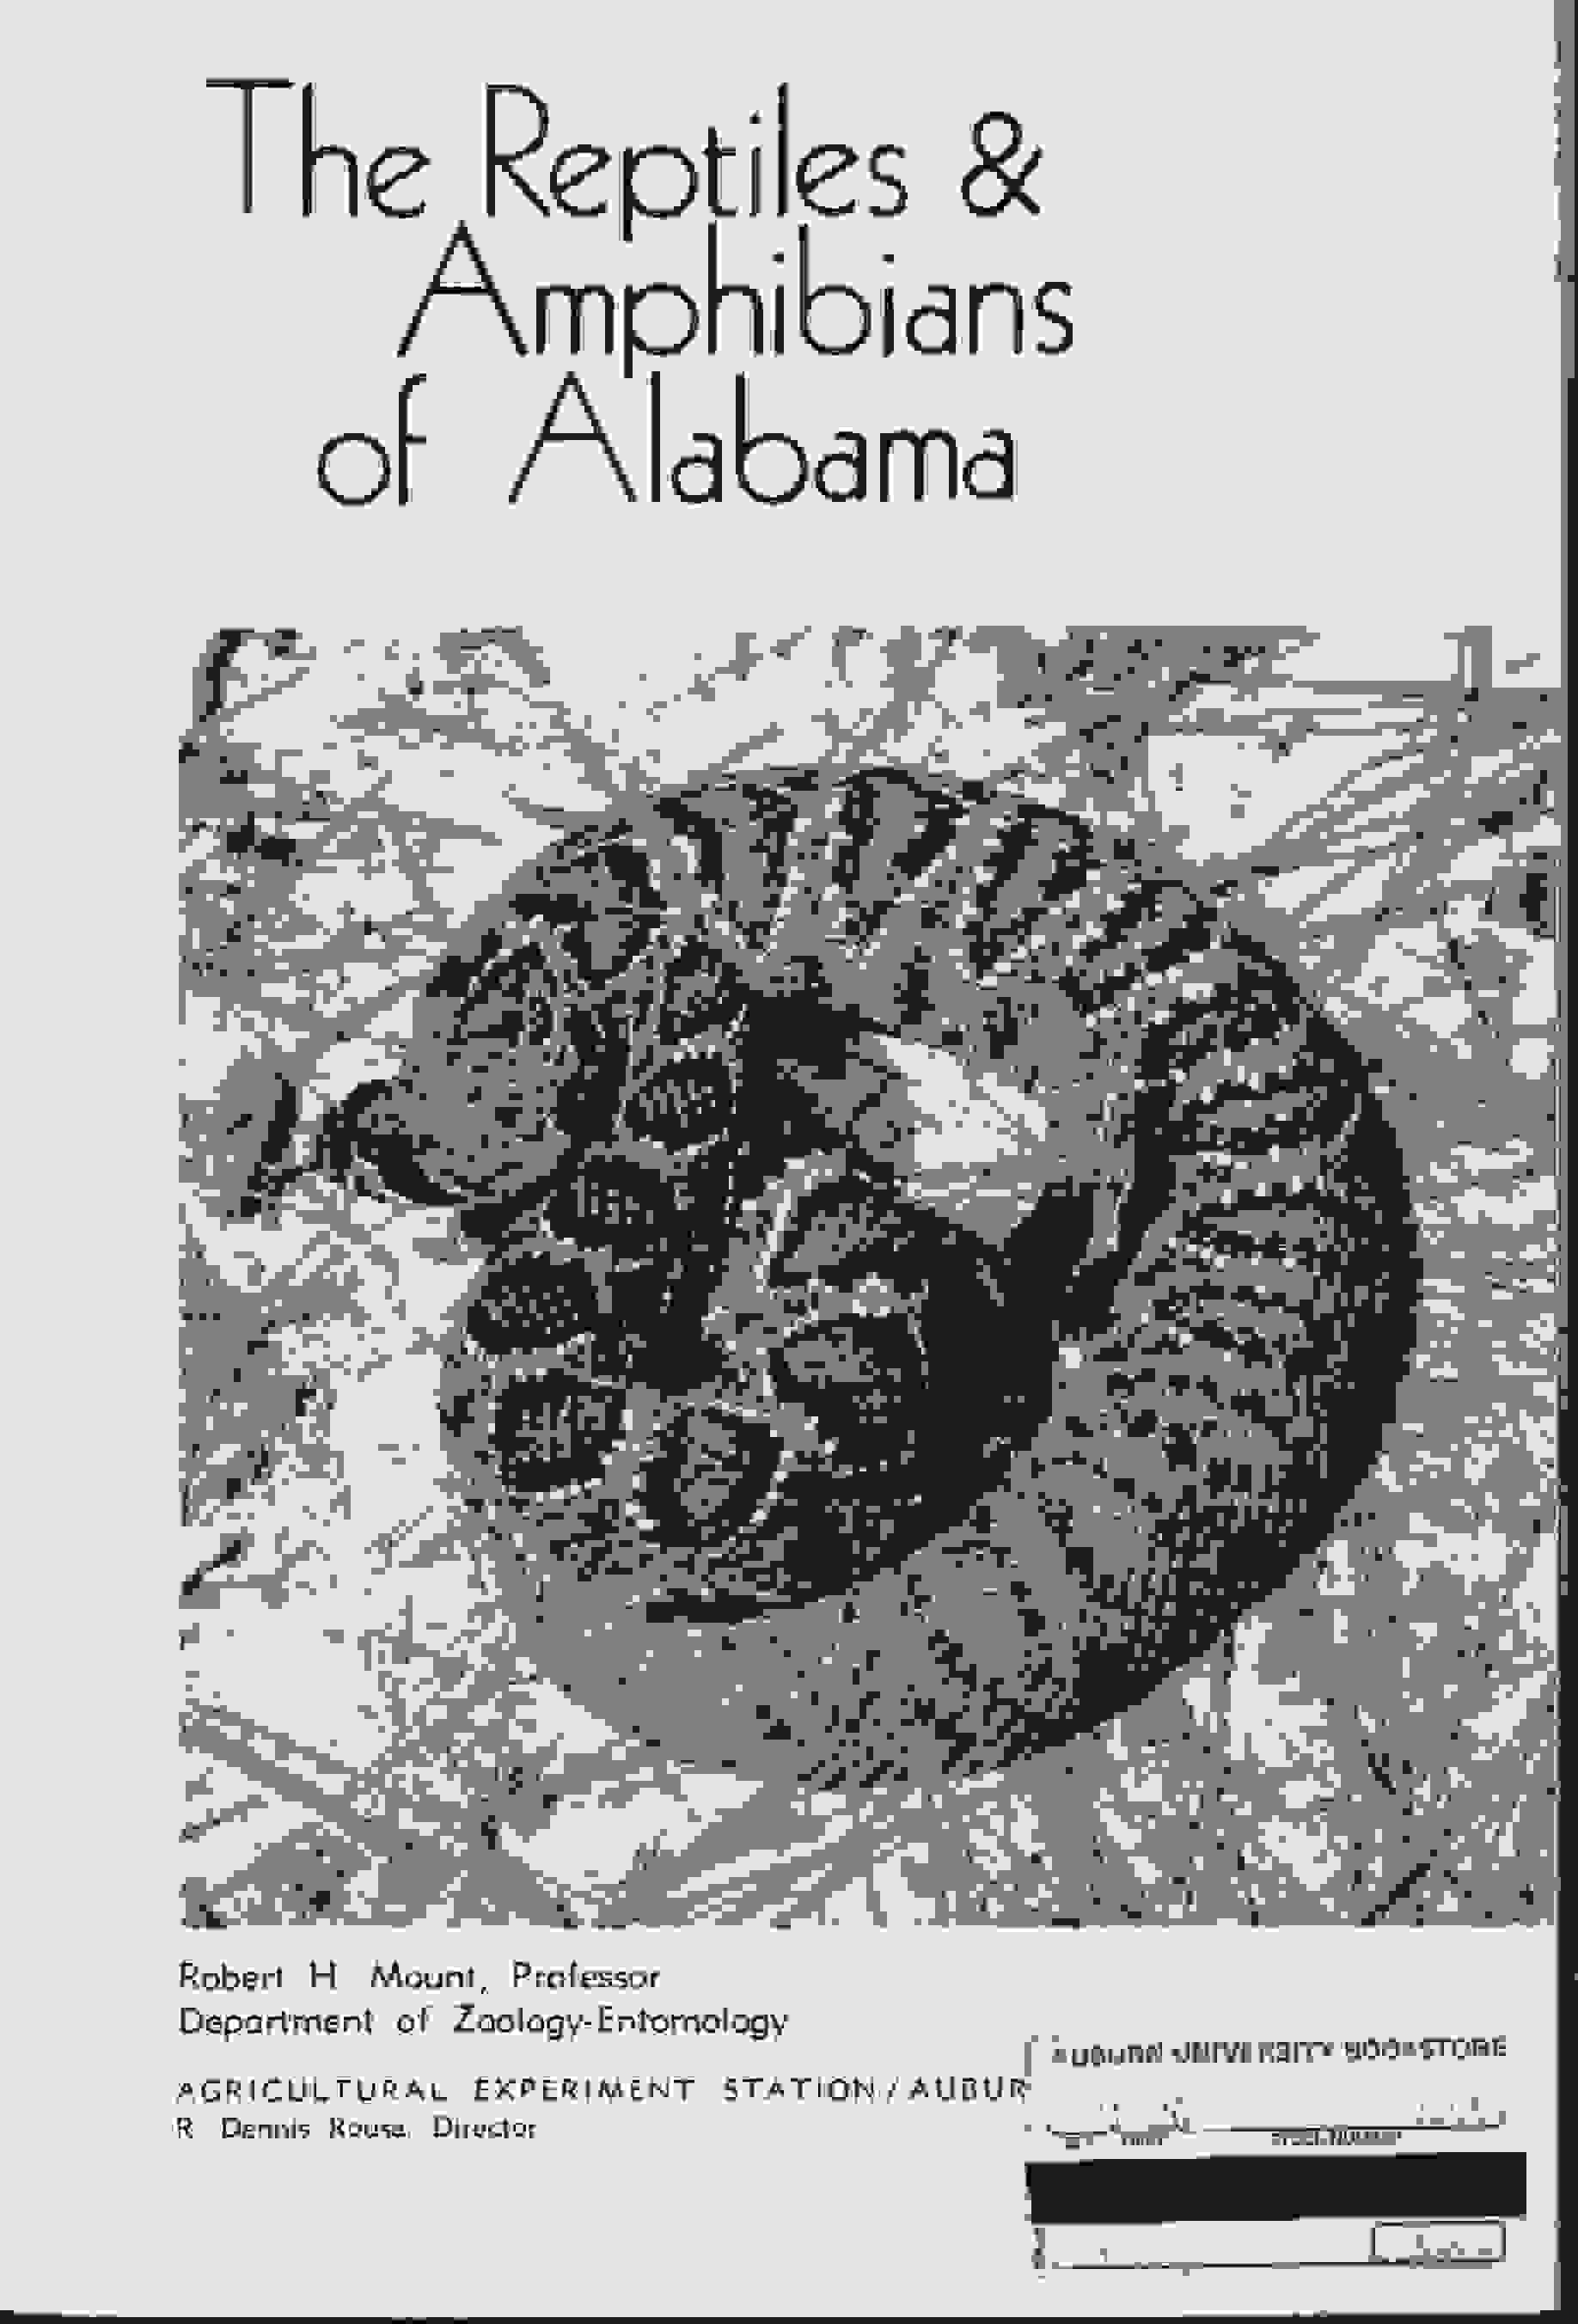 The Reptiles and amphibians of Alabama de Robert. H Mount Img10